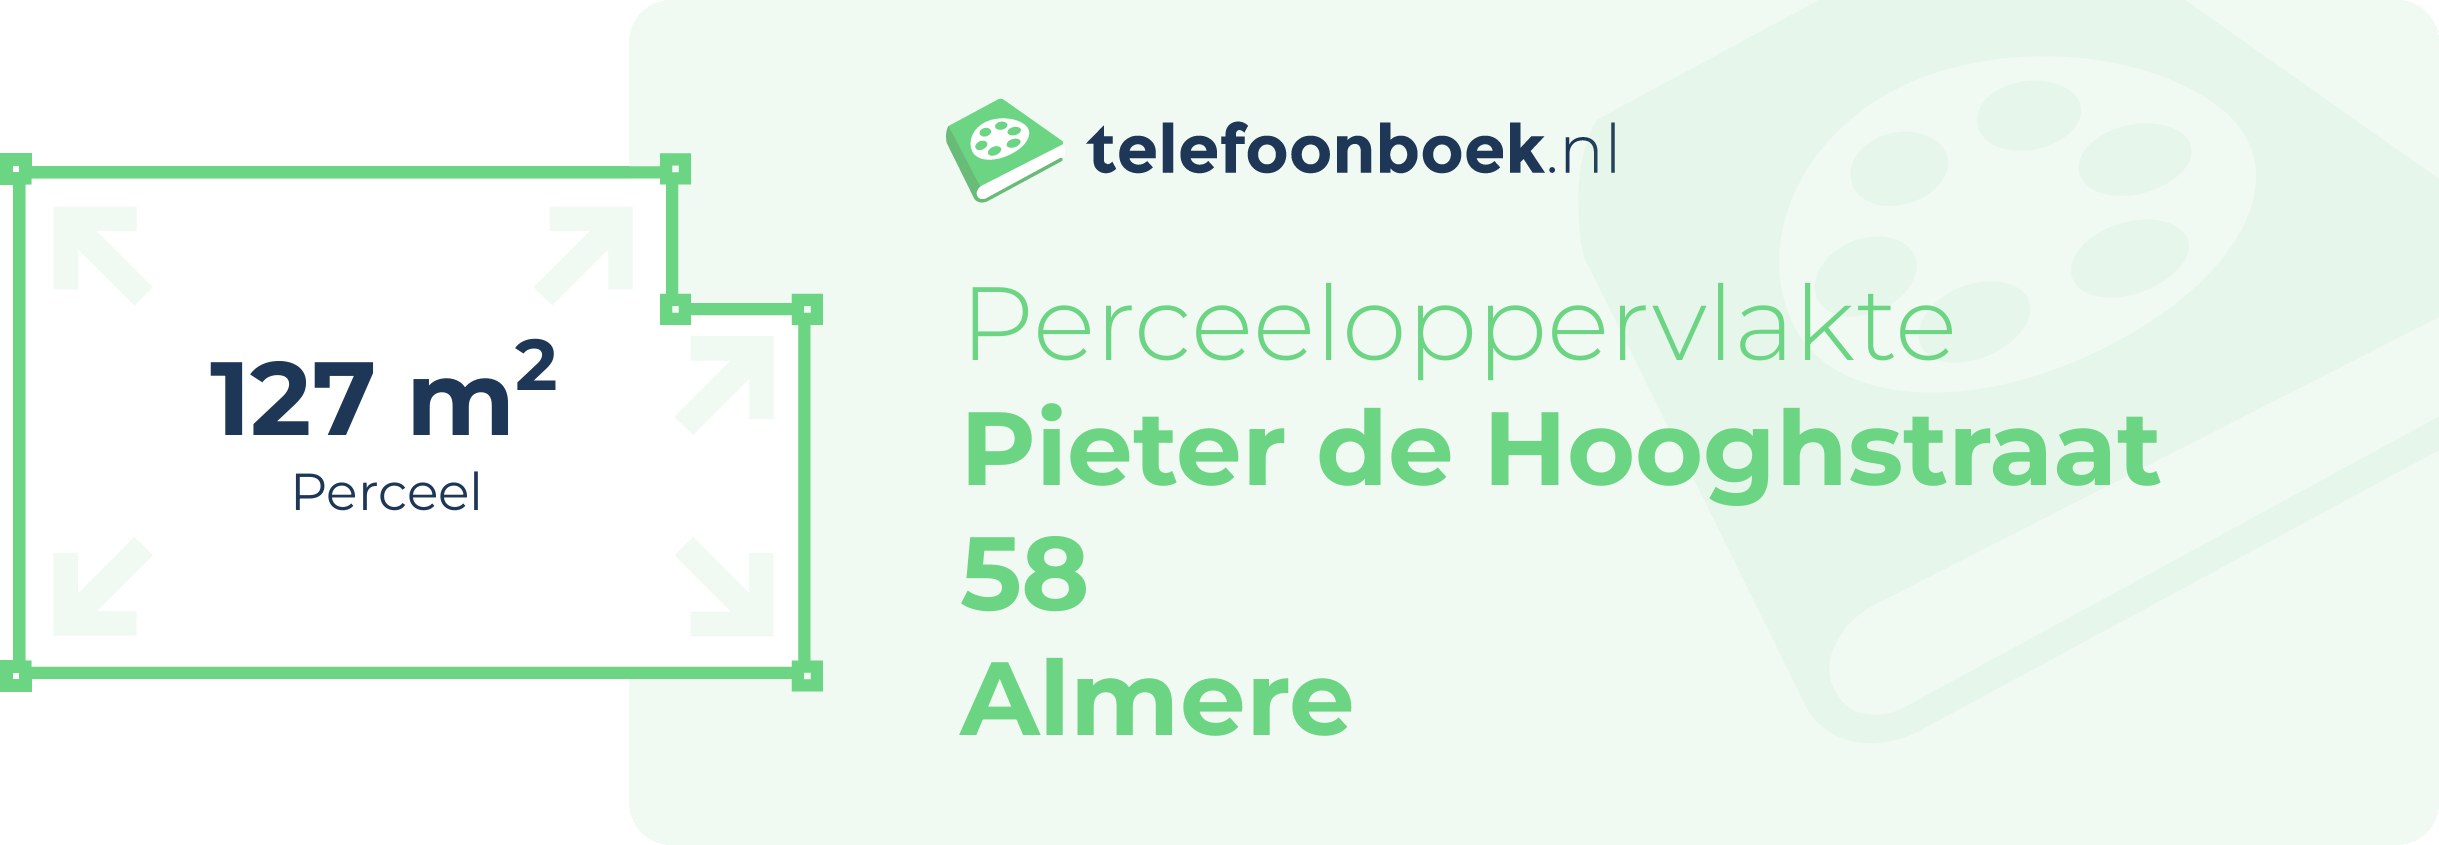 Perceeloppervlakte Pieter De Hooghstraat 58 Almere